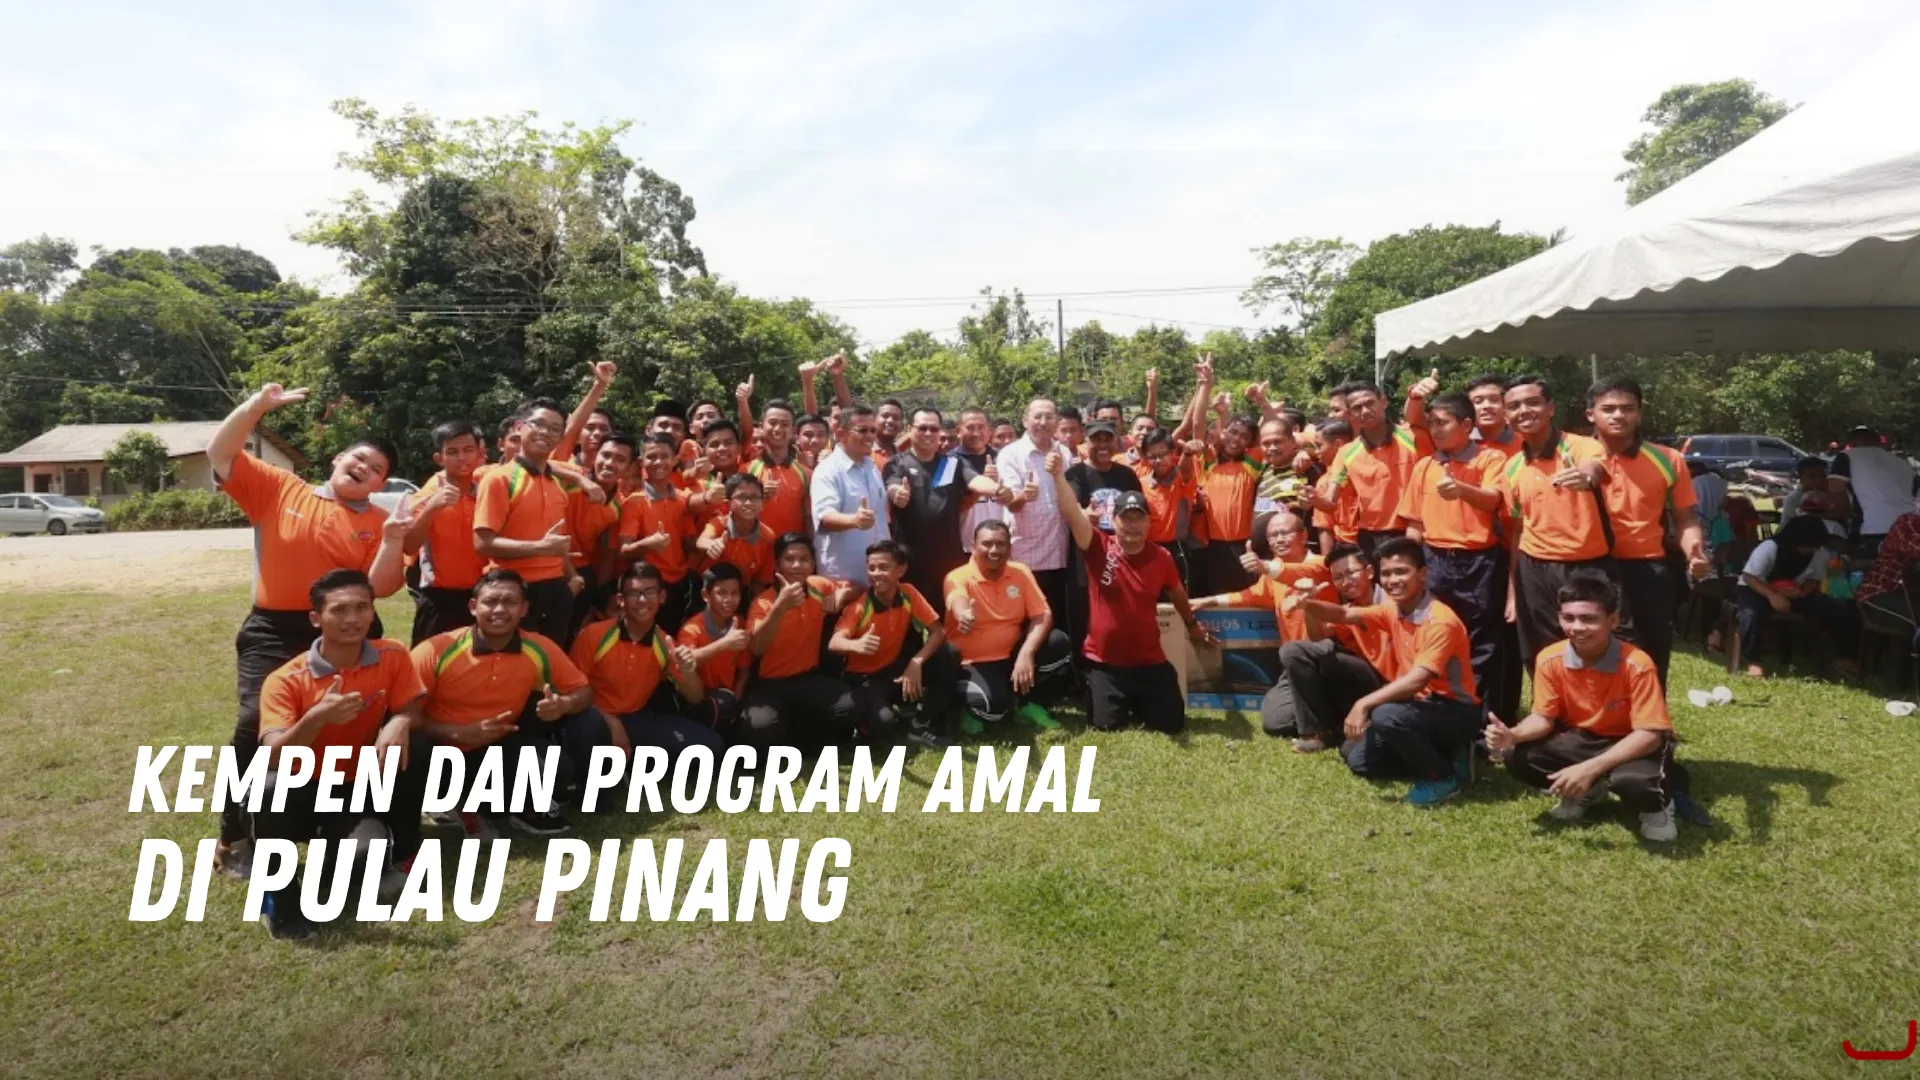 Kempen dan Program Amal di Pulau Pinang Malaysia